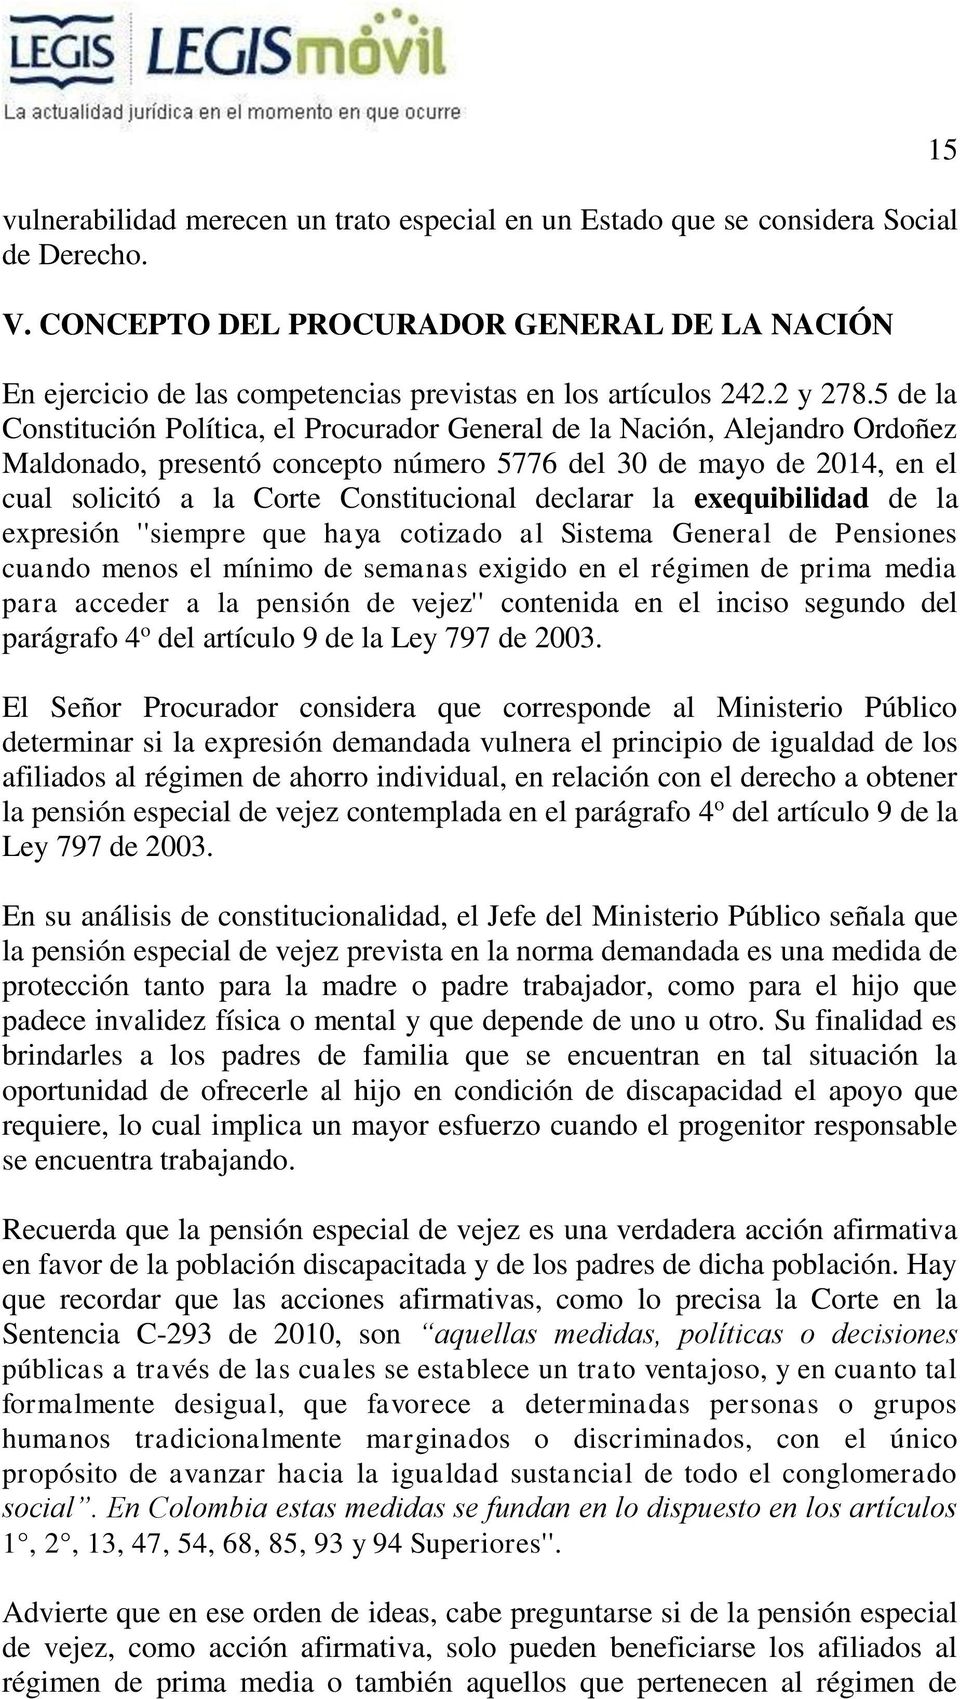 5 de la Constitución Política, el Procurador General de la Nación, Alejandro Ordoñez Maldonado, presentó concepto número 5776 del 30 de mayo de 2014, en el cual solicitó a la Corte Constitucional